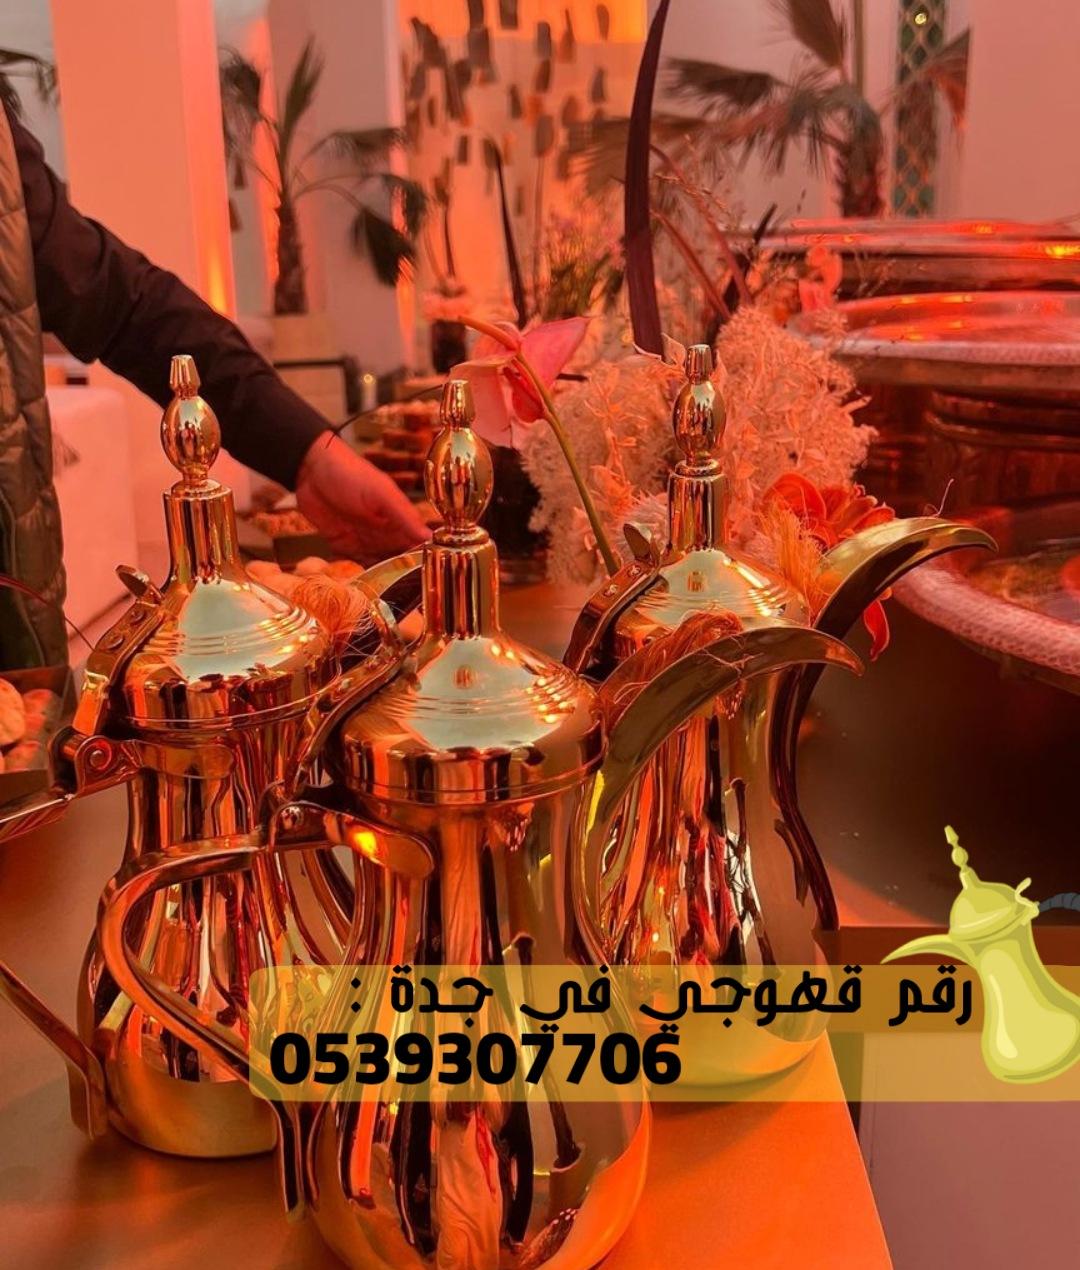 صبابات قهوة و صبابين قهوه في جدة,0539307706 629020758